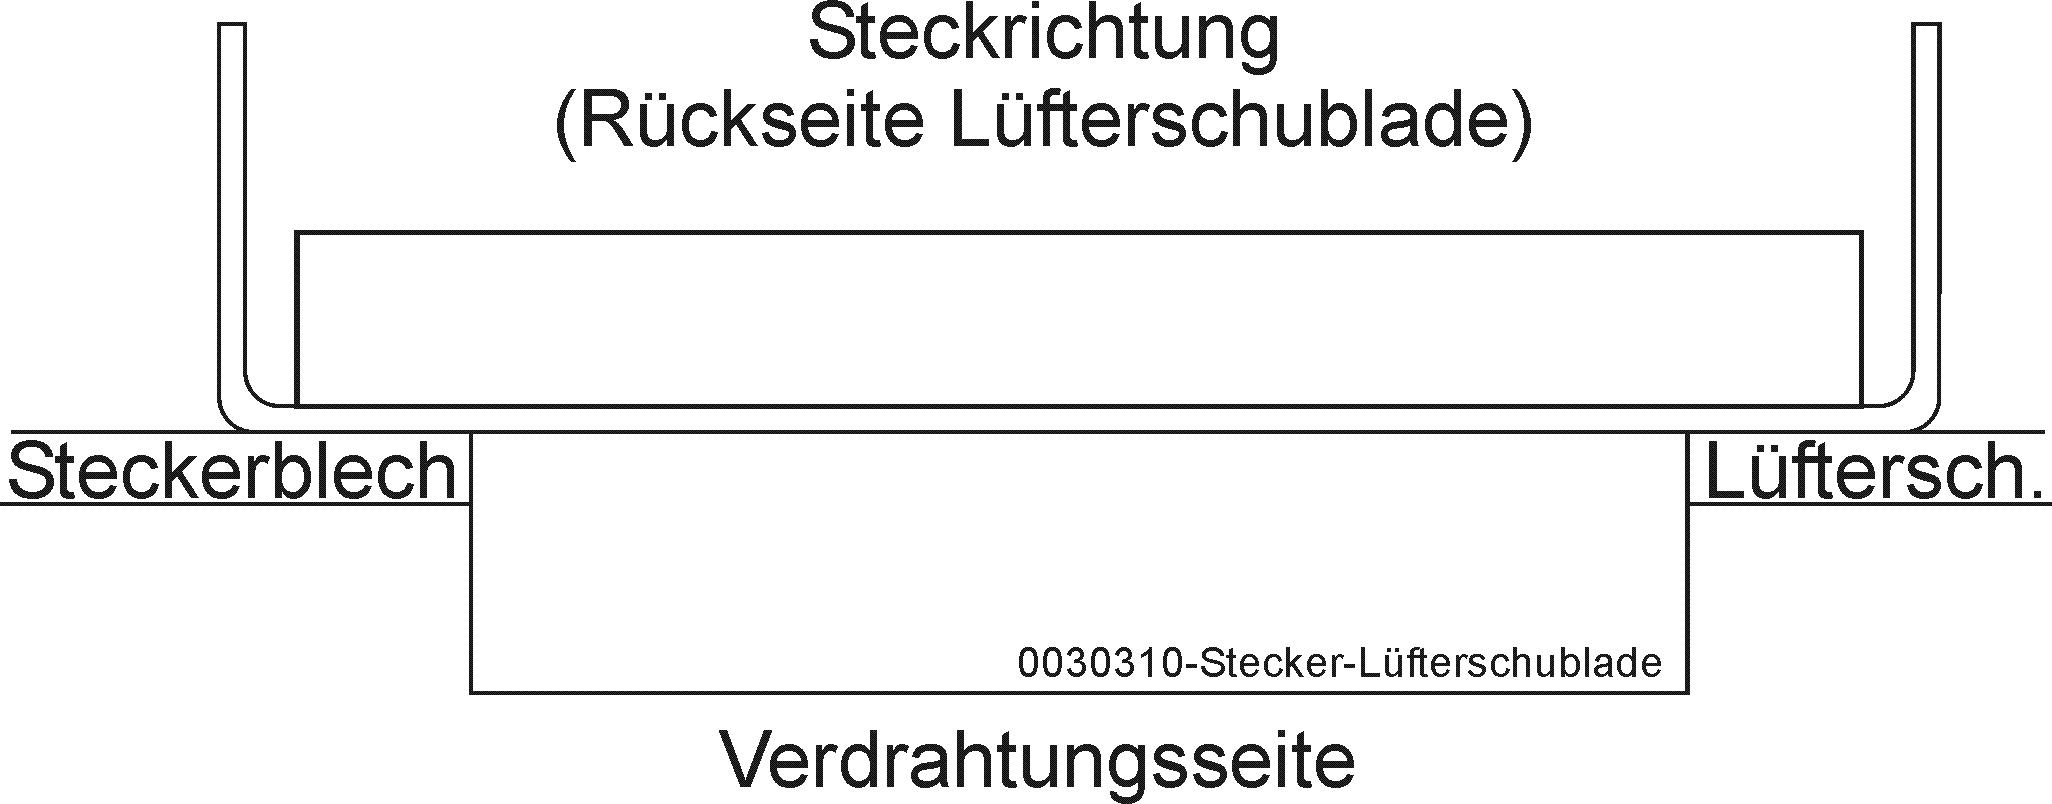 DESK-GmbH-0030310-Stecker-Lüfterschublade